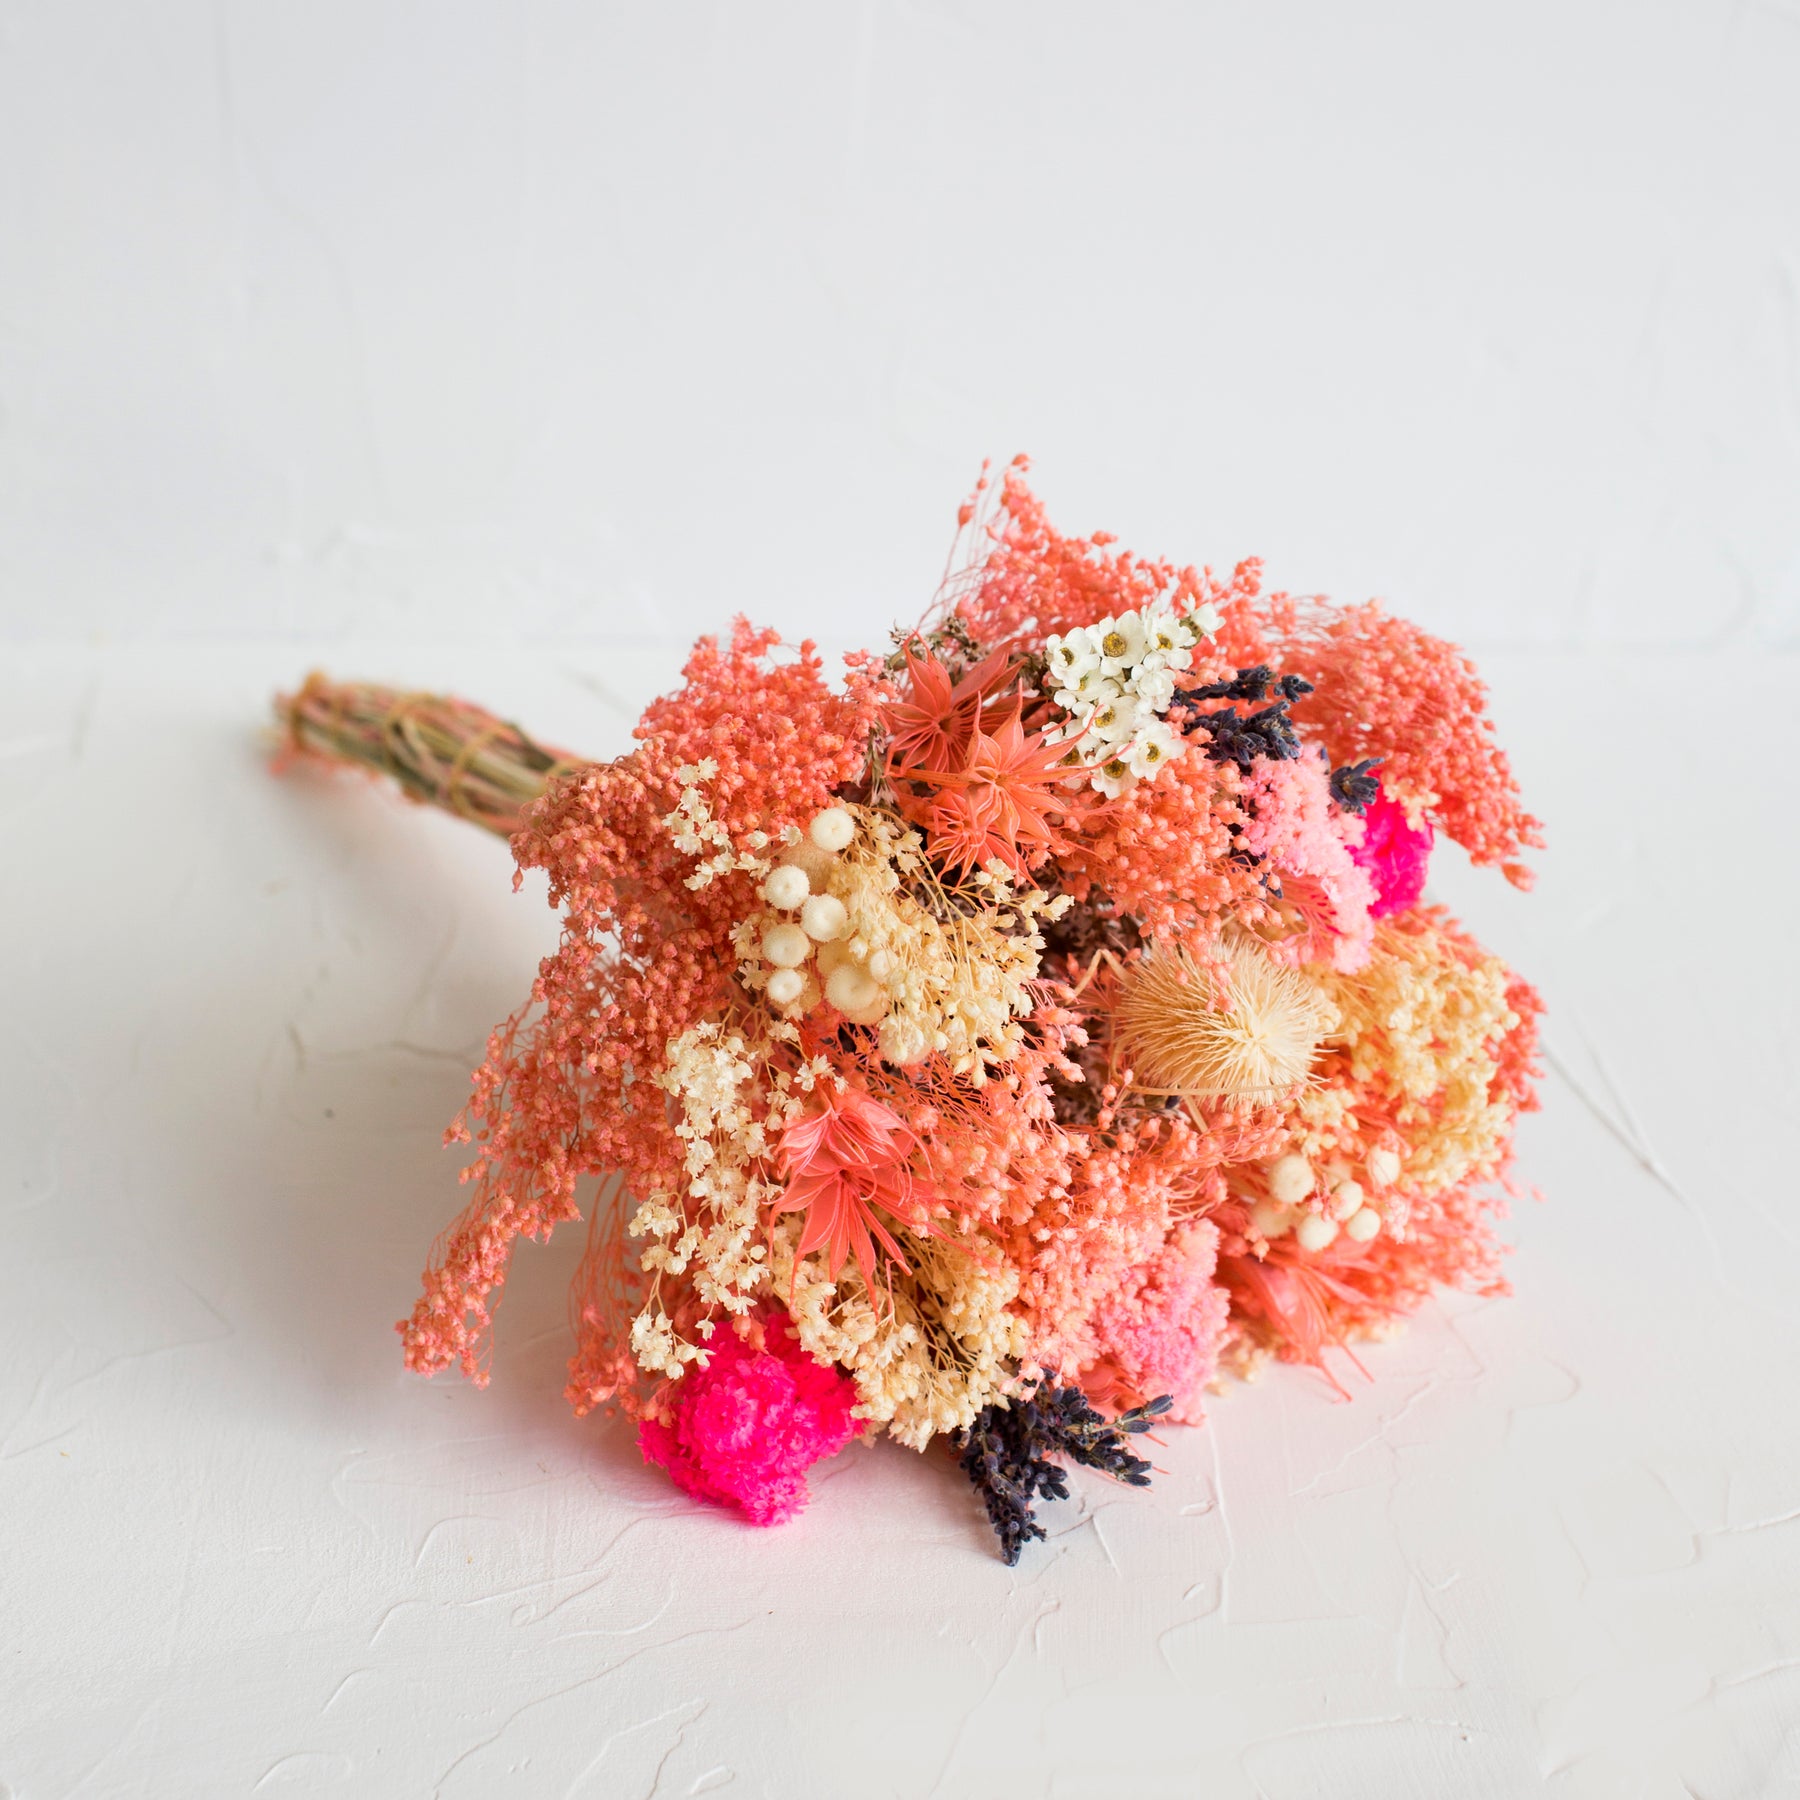 Strawberry Fields Dried Bouquet – Salt & Sundry